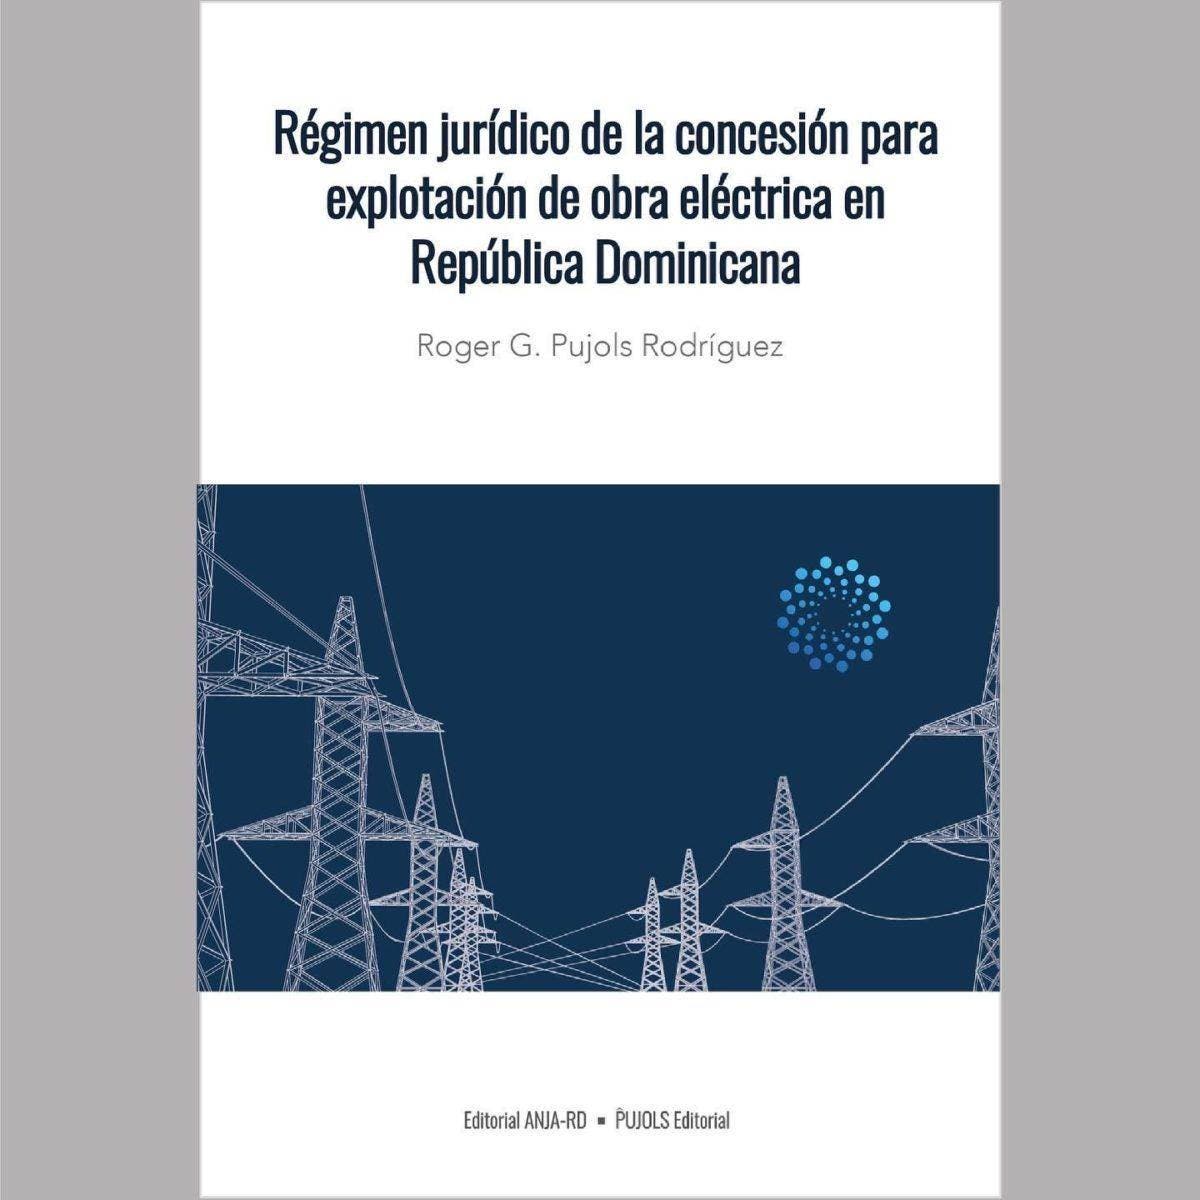 Presentan libro sobre régimen jurídico de concesión eléctrica